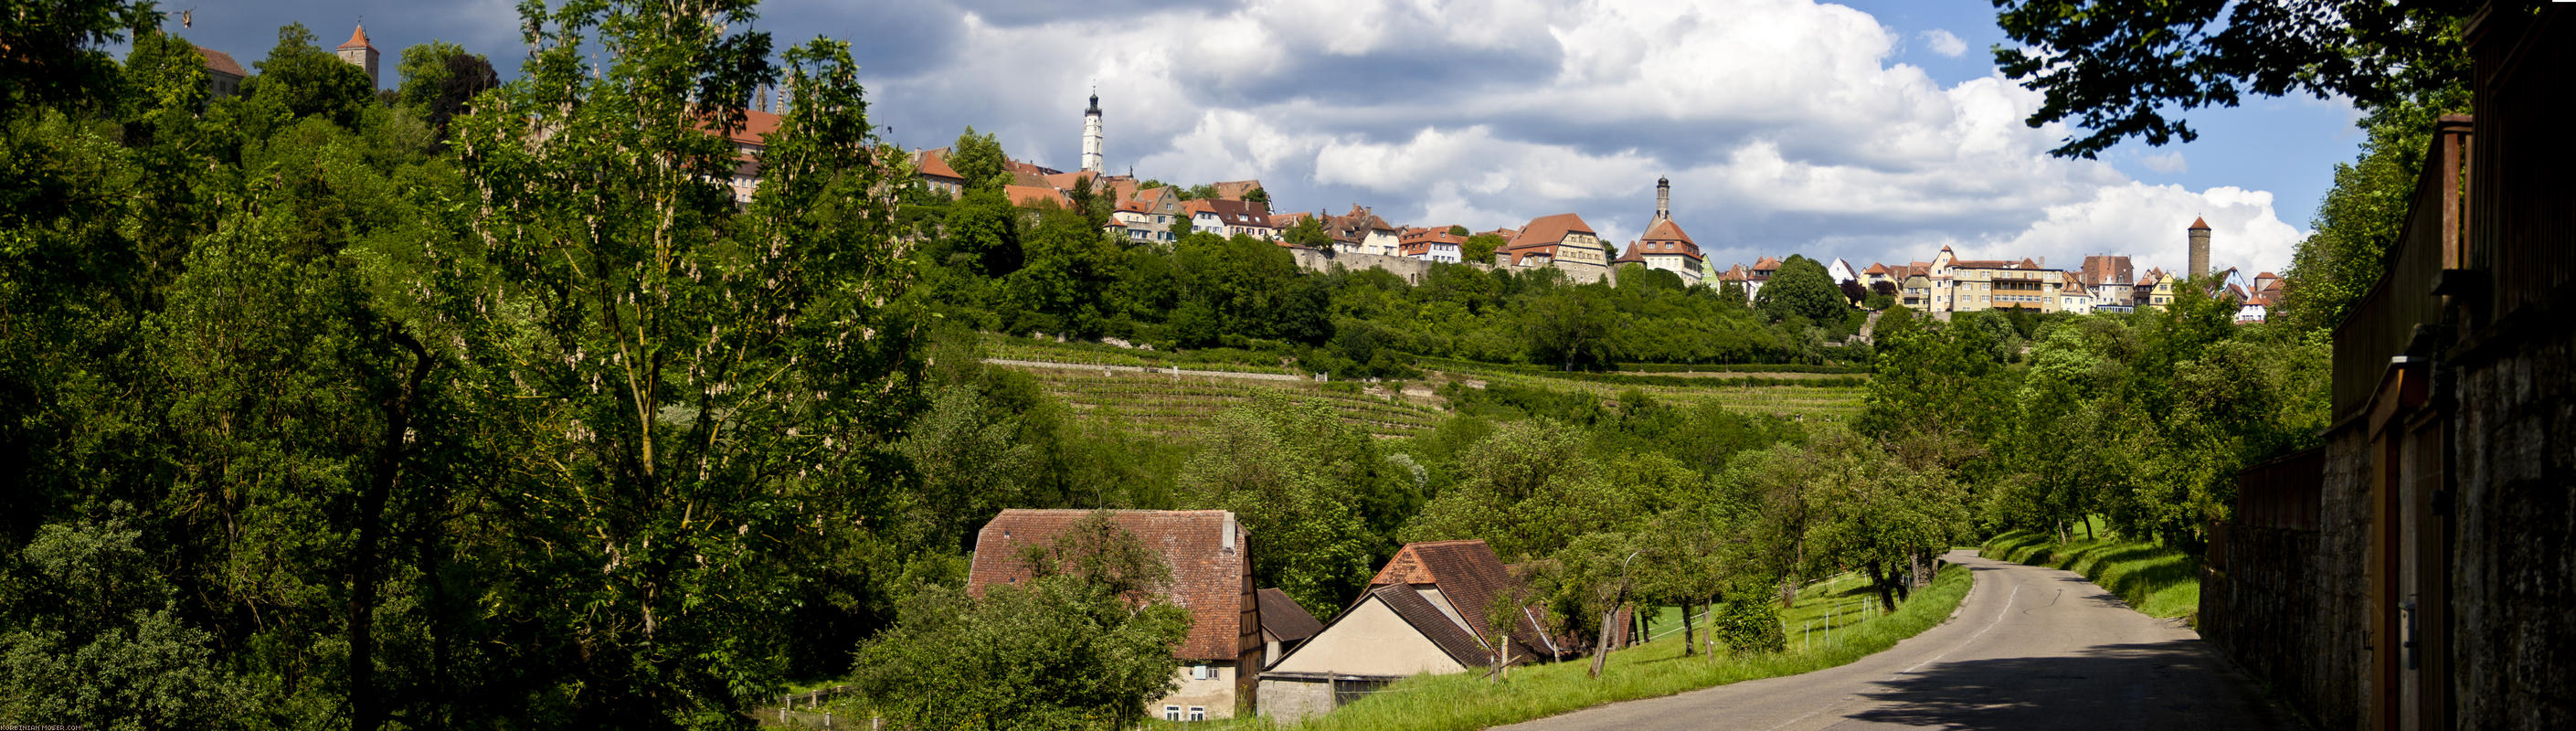 ﻿Rothenburg dombon fekvő városa elkápráztató.